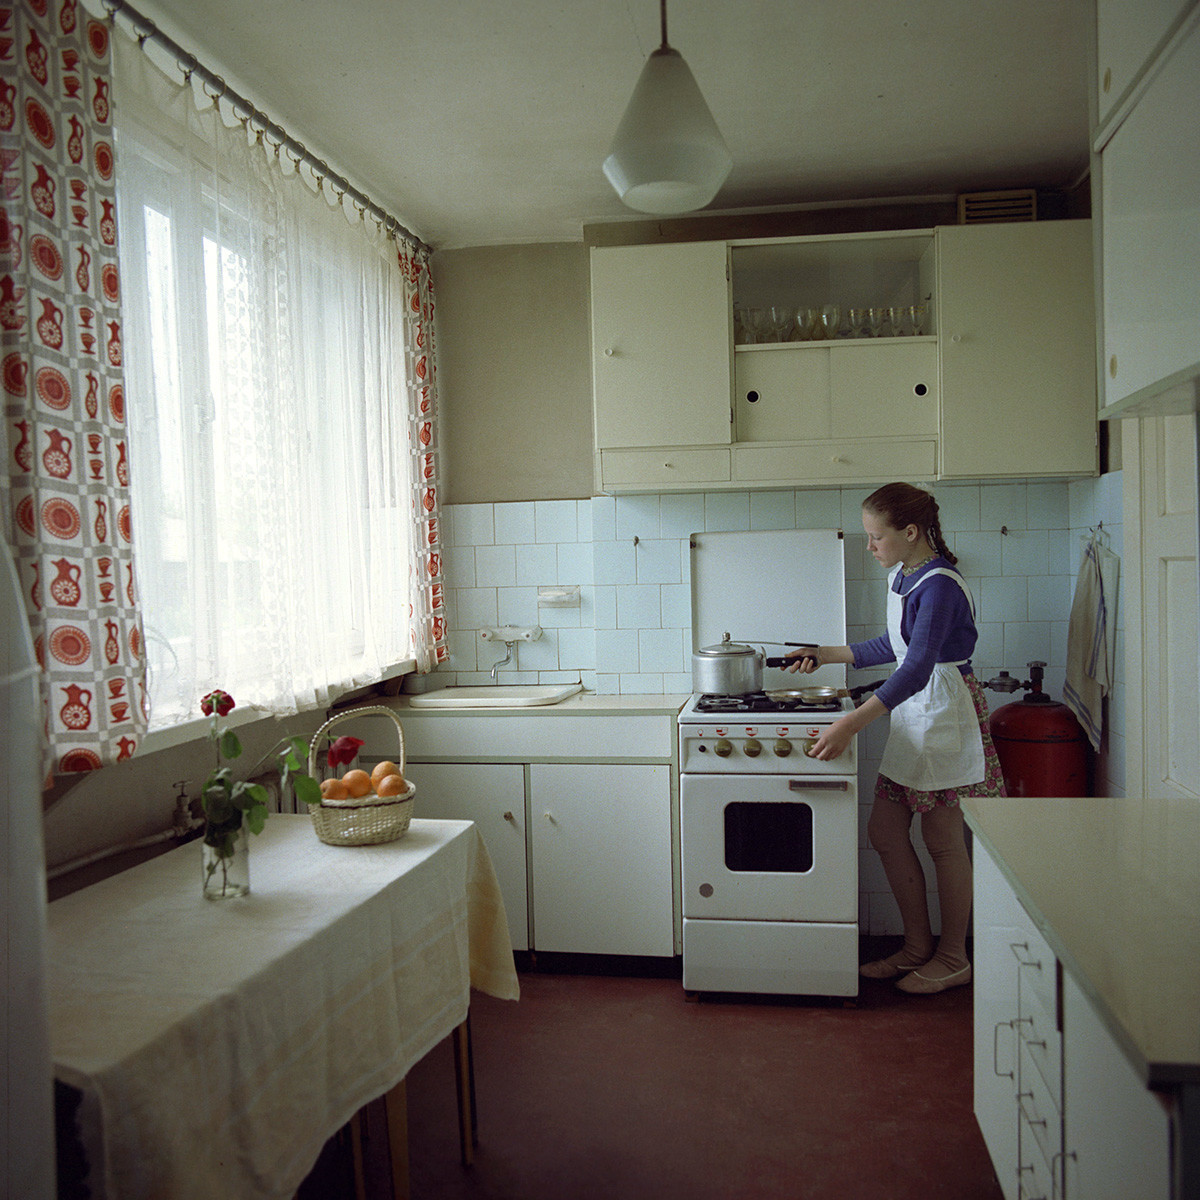 Cozinha na Riga soviética, 1974